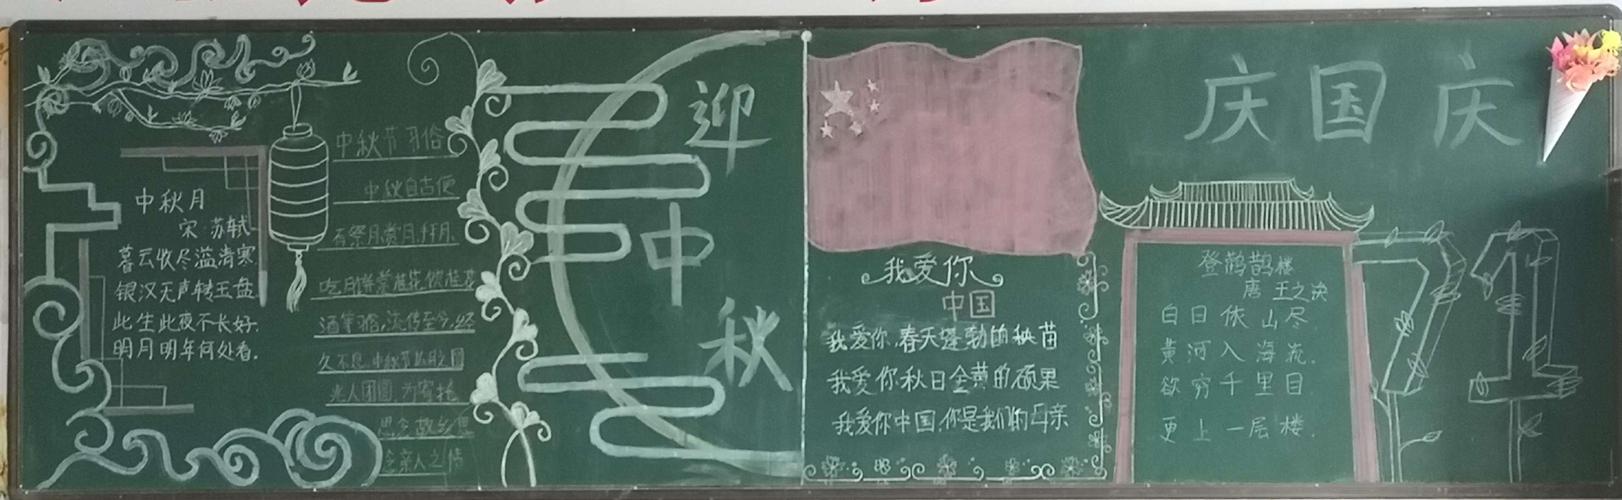 小学开展迎中秋庆国庆主题黑板报比赛副本 写美篇 为让学生了解